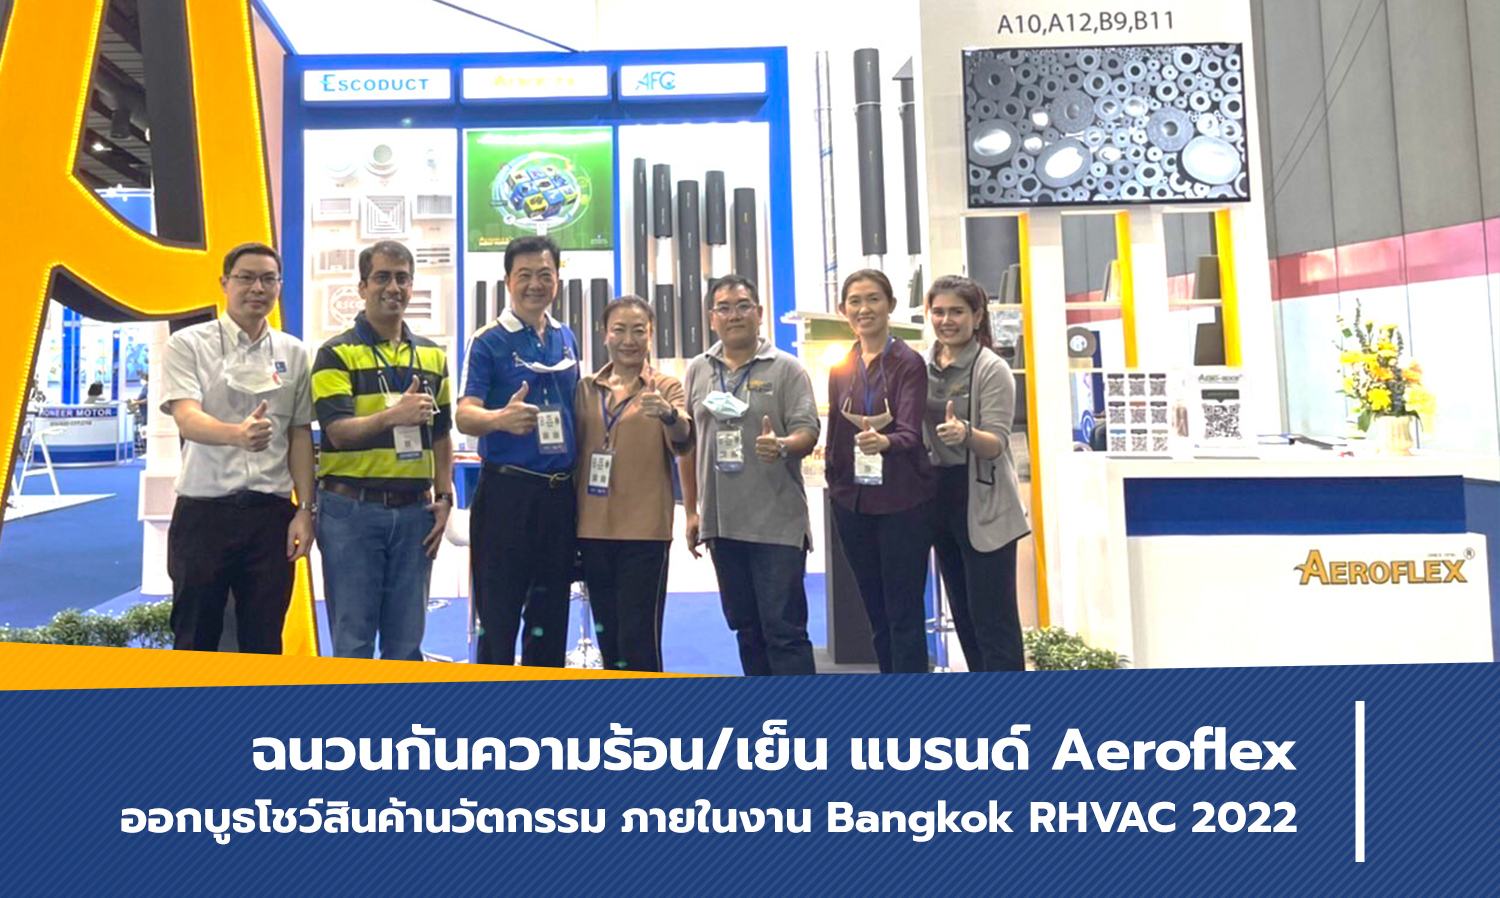 ฉนวนกันความร้อน/เย็น แบรนด์ Aeroflex ออกบูธโชว์สินค้านวัตกรรม ภายในงาน Bangkok RHVAC 2022